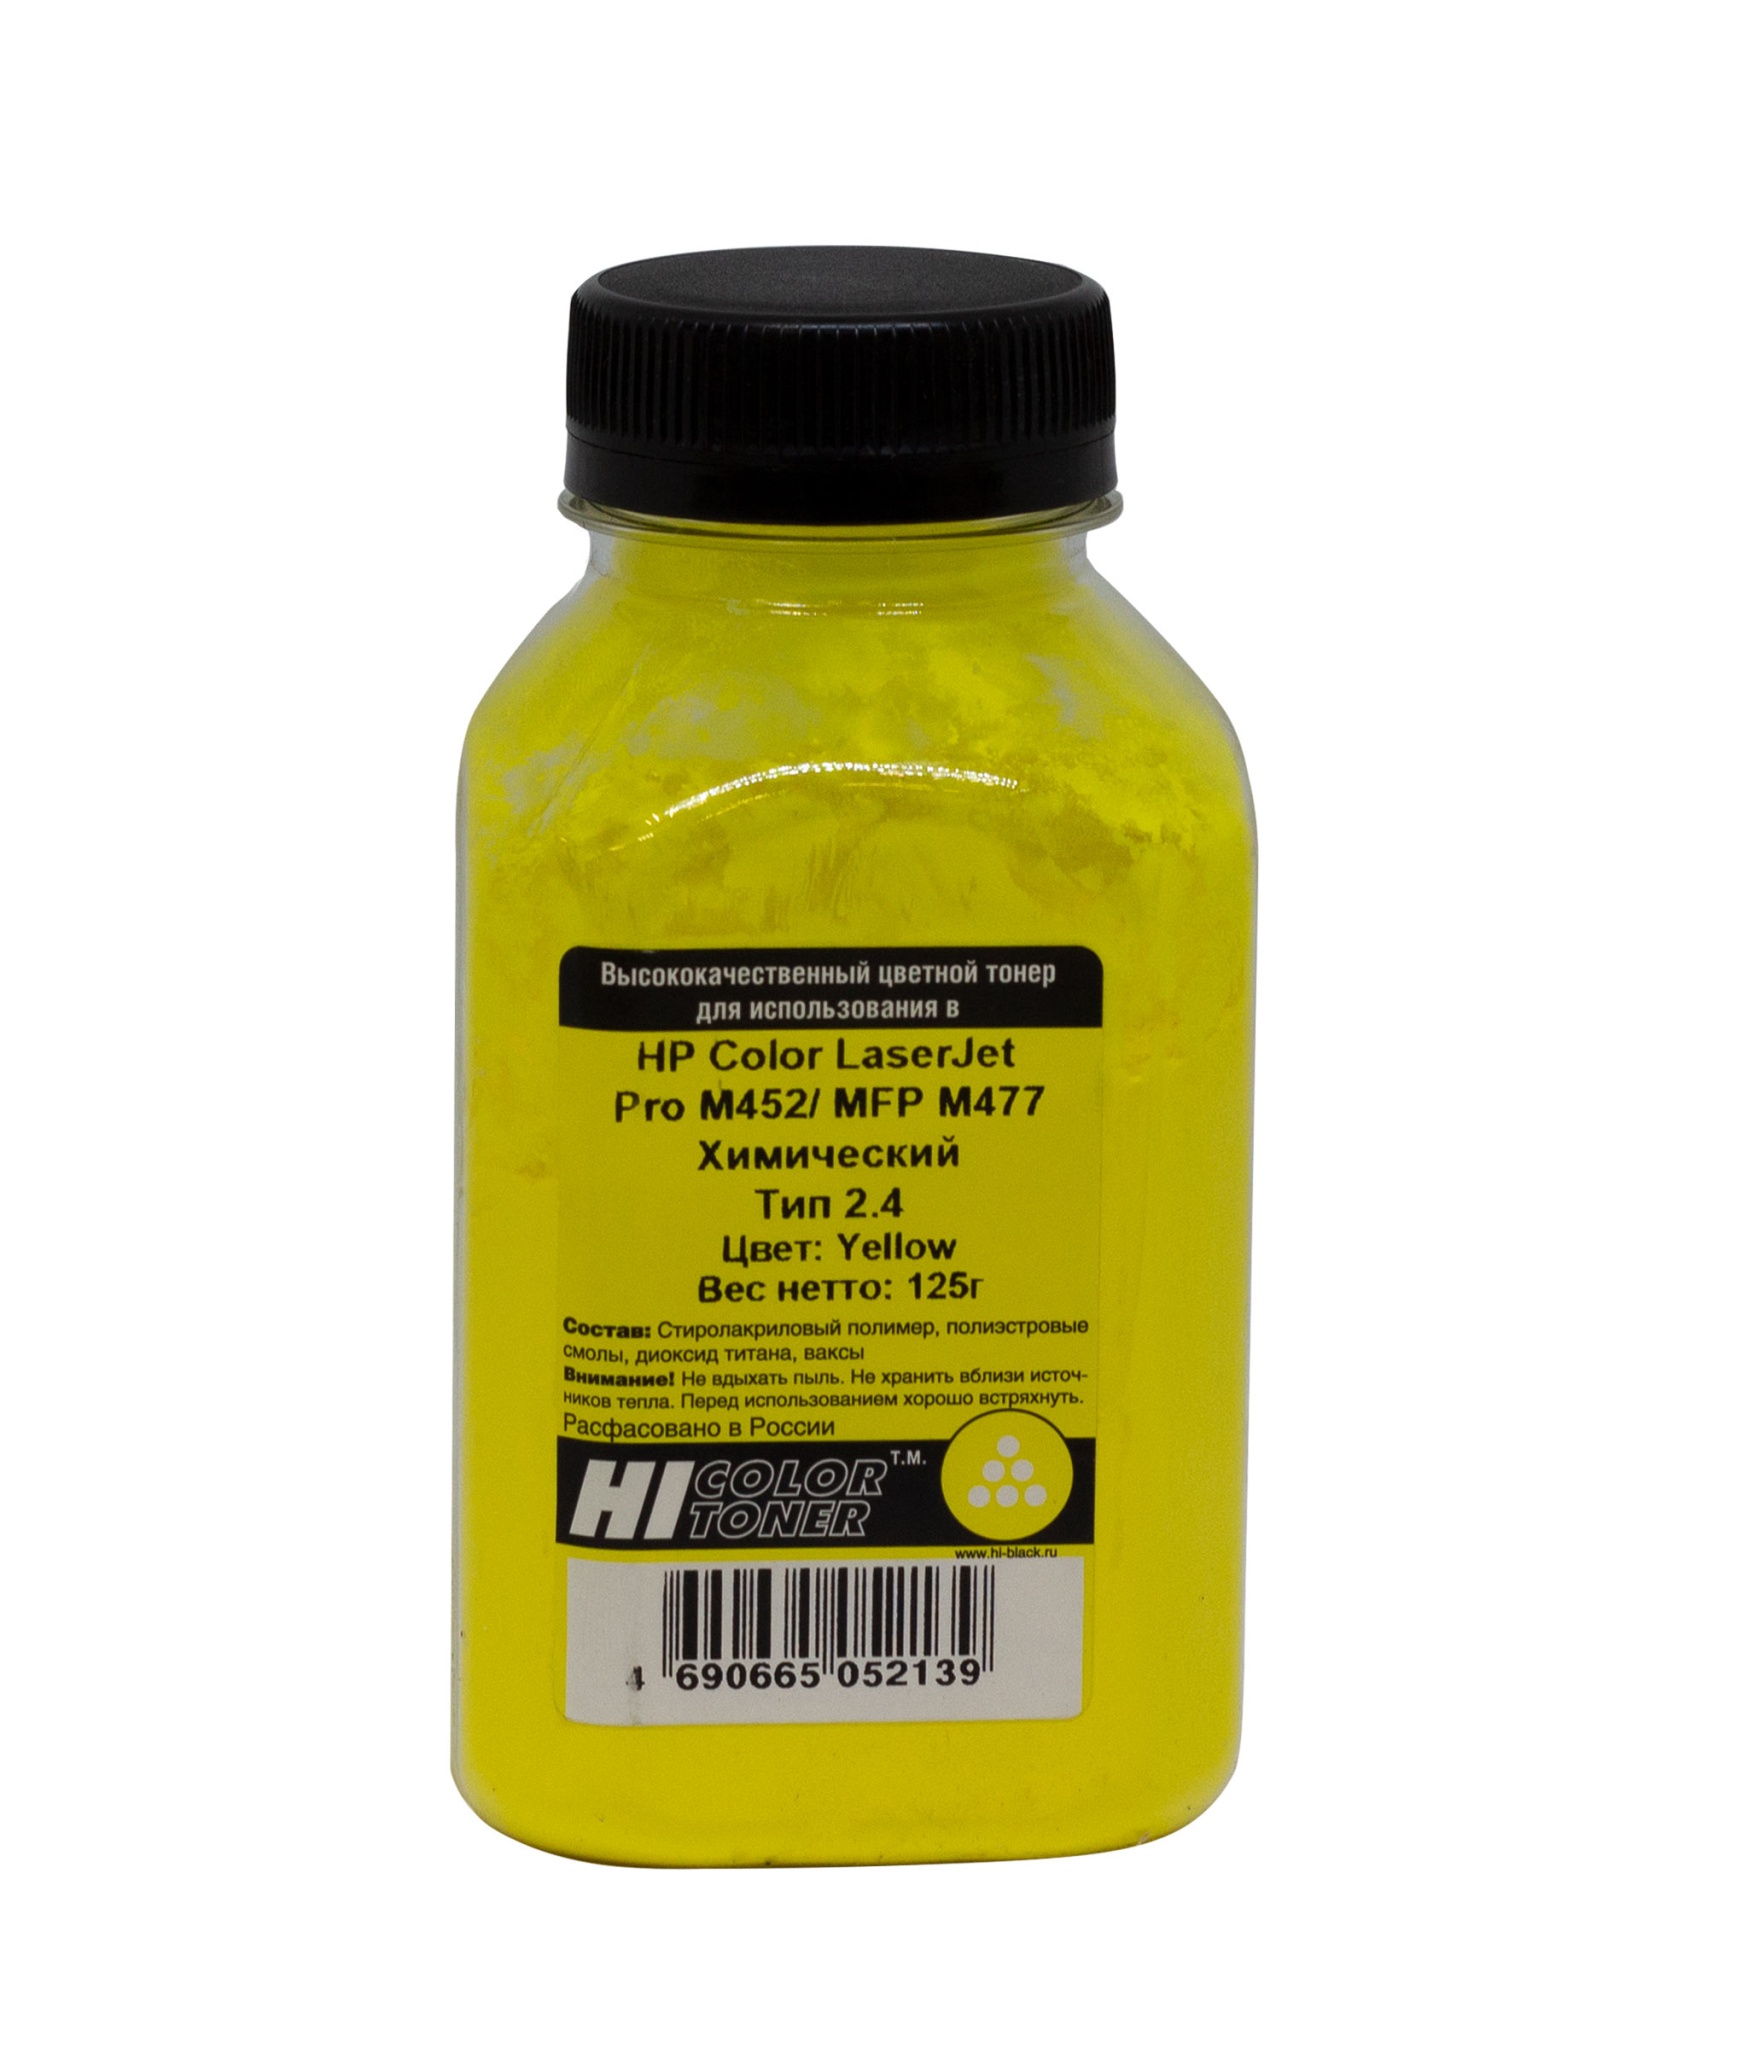 Тонер универсальный Hi-Black (CF412A) для HP CLJ Pro M452/ MFP M477, Тип 2.4, химический, жёлтый (125 гр.)